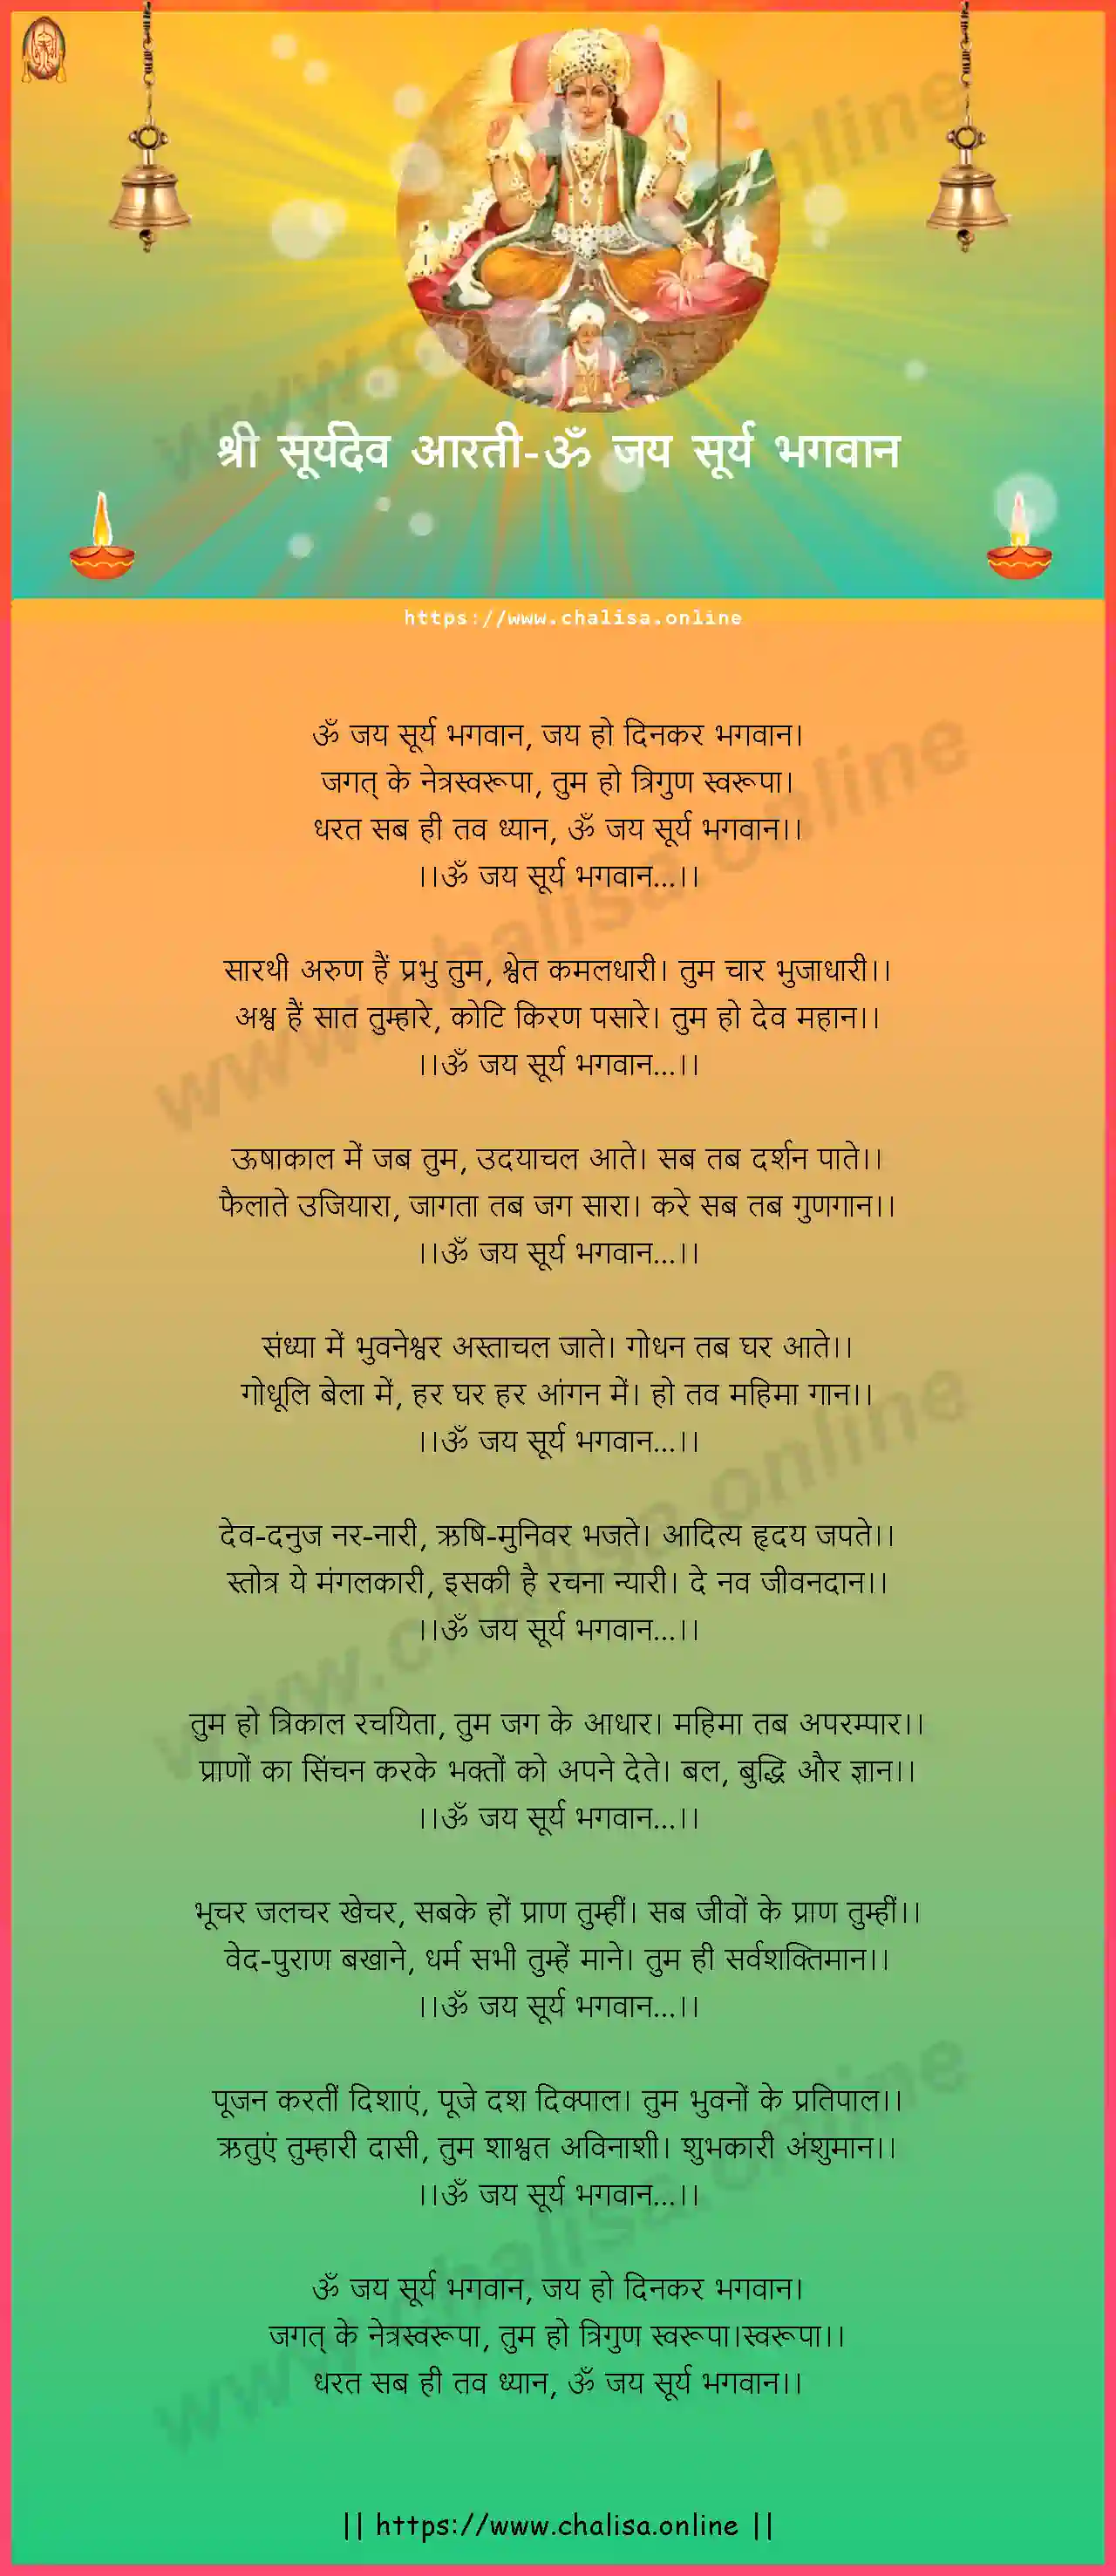 om-jay-surya-bhagwan-suryadev-aarti-hindi-lyrics-download